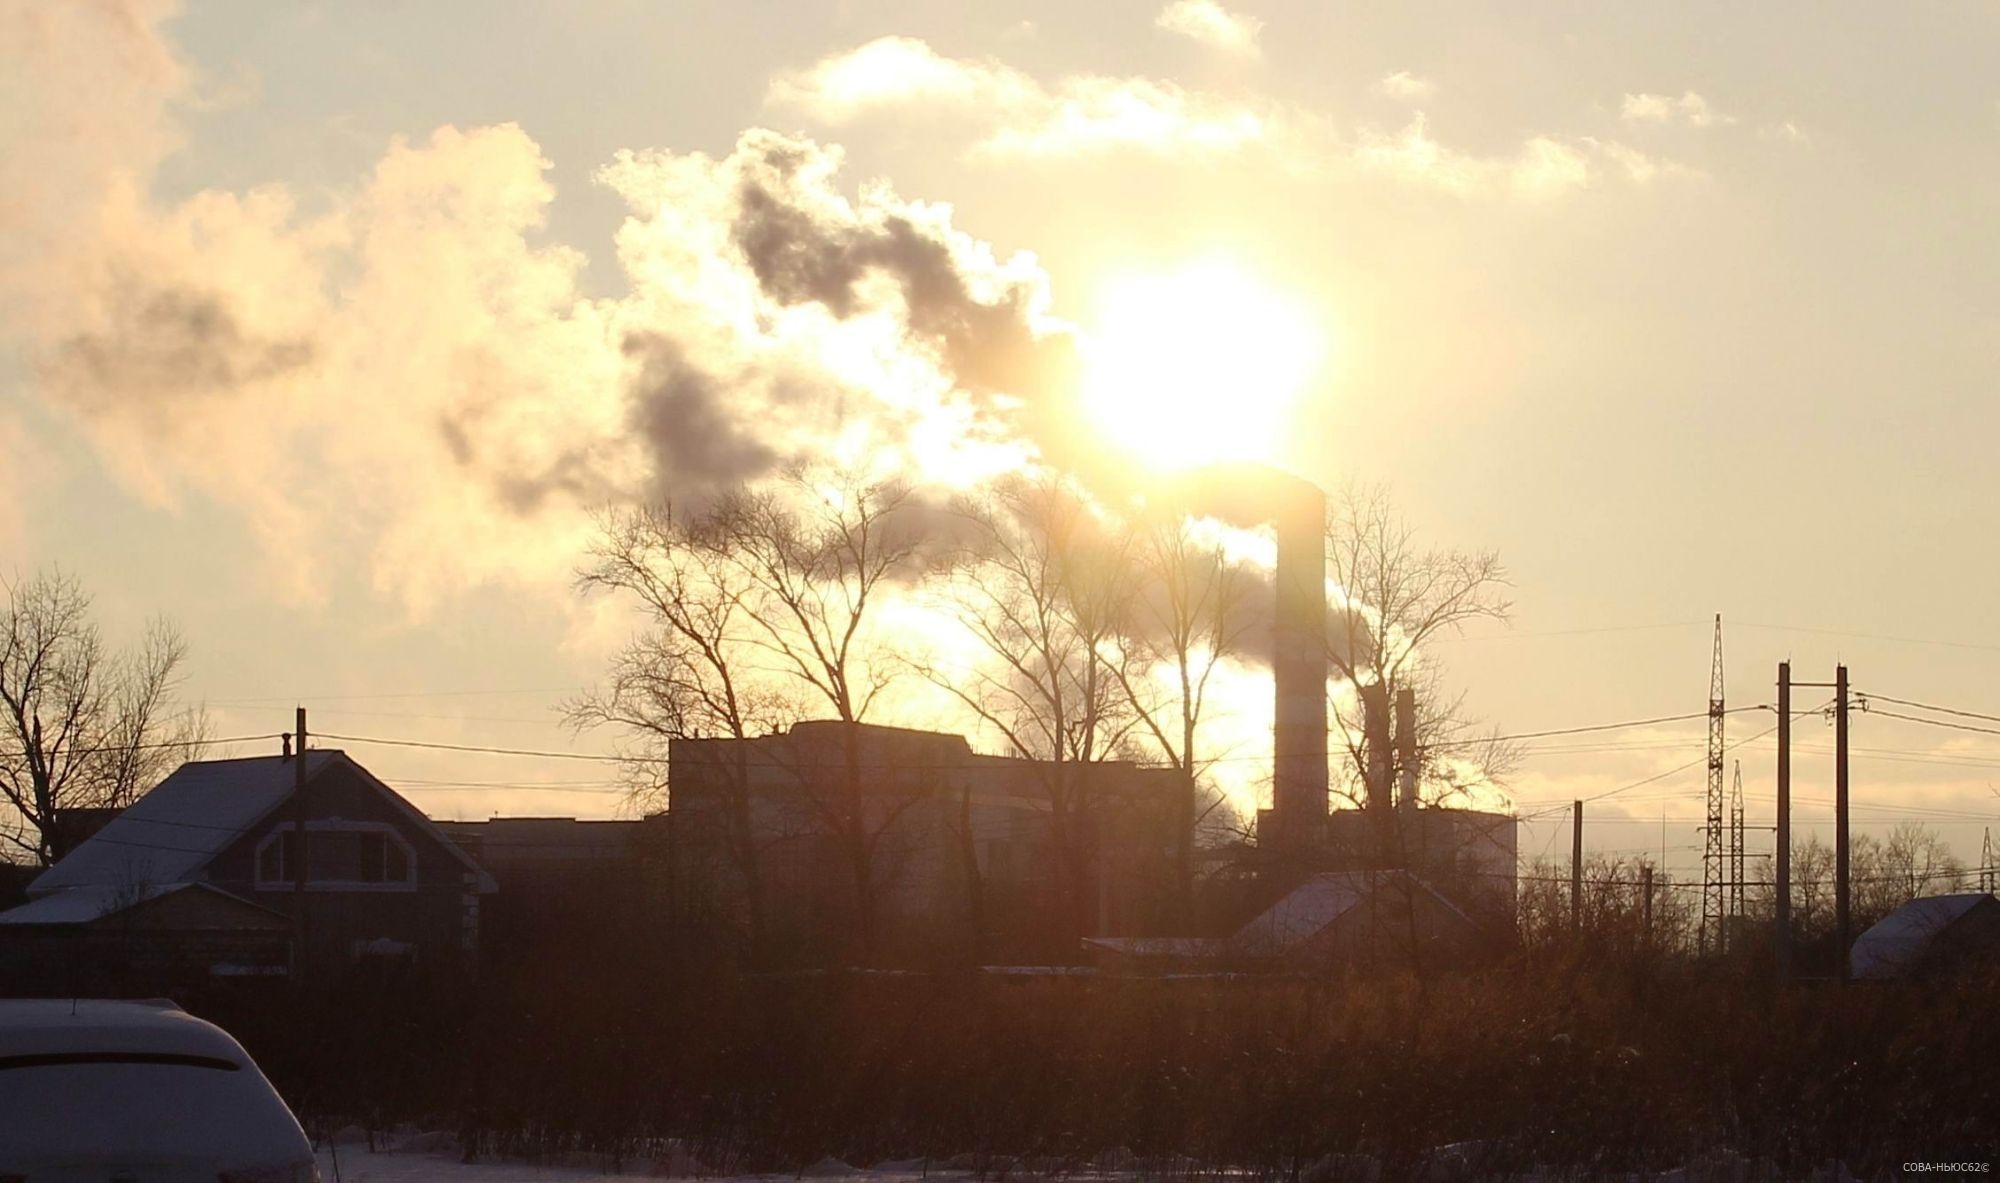 30 жителей Турлатова обратились со схожими симптомами к медикам после выбросов